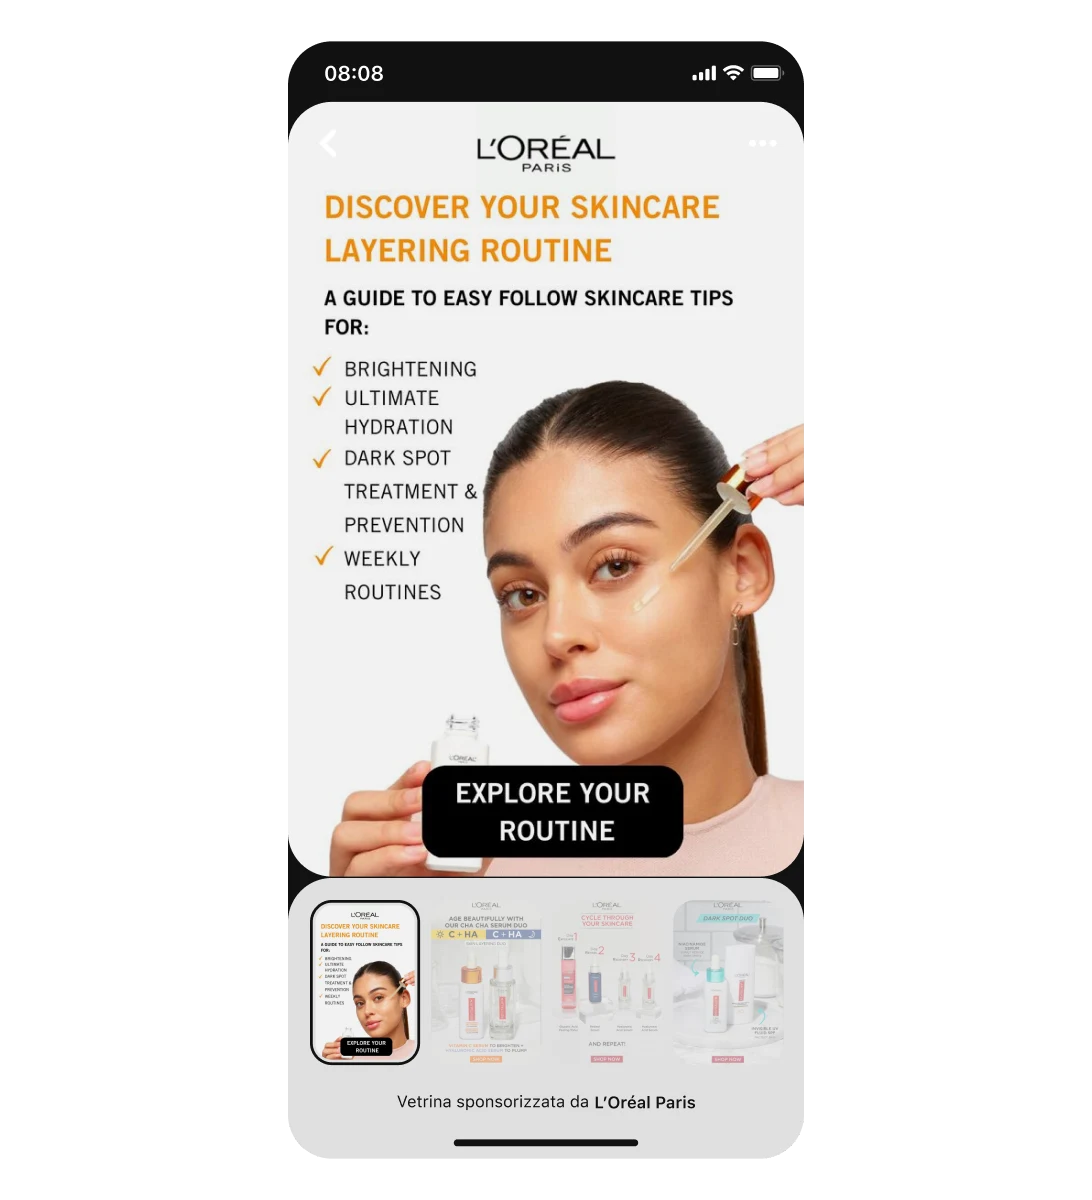 Visualizzazione su dispositivo mobile di un annuncio in vetrina di L'Oreal che mostra una donna latina che applica un siero viso. Il Pin titolo è seguito da tre schede da scorrere.